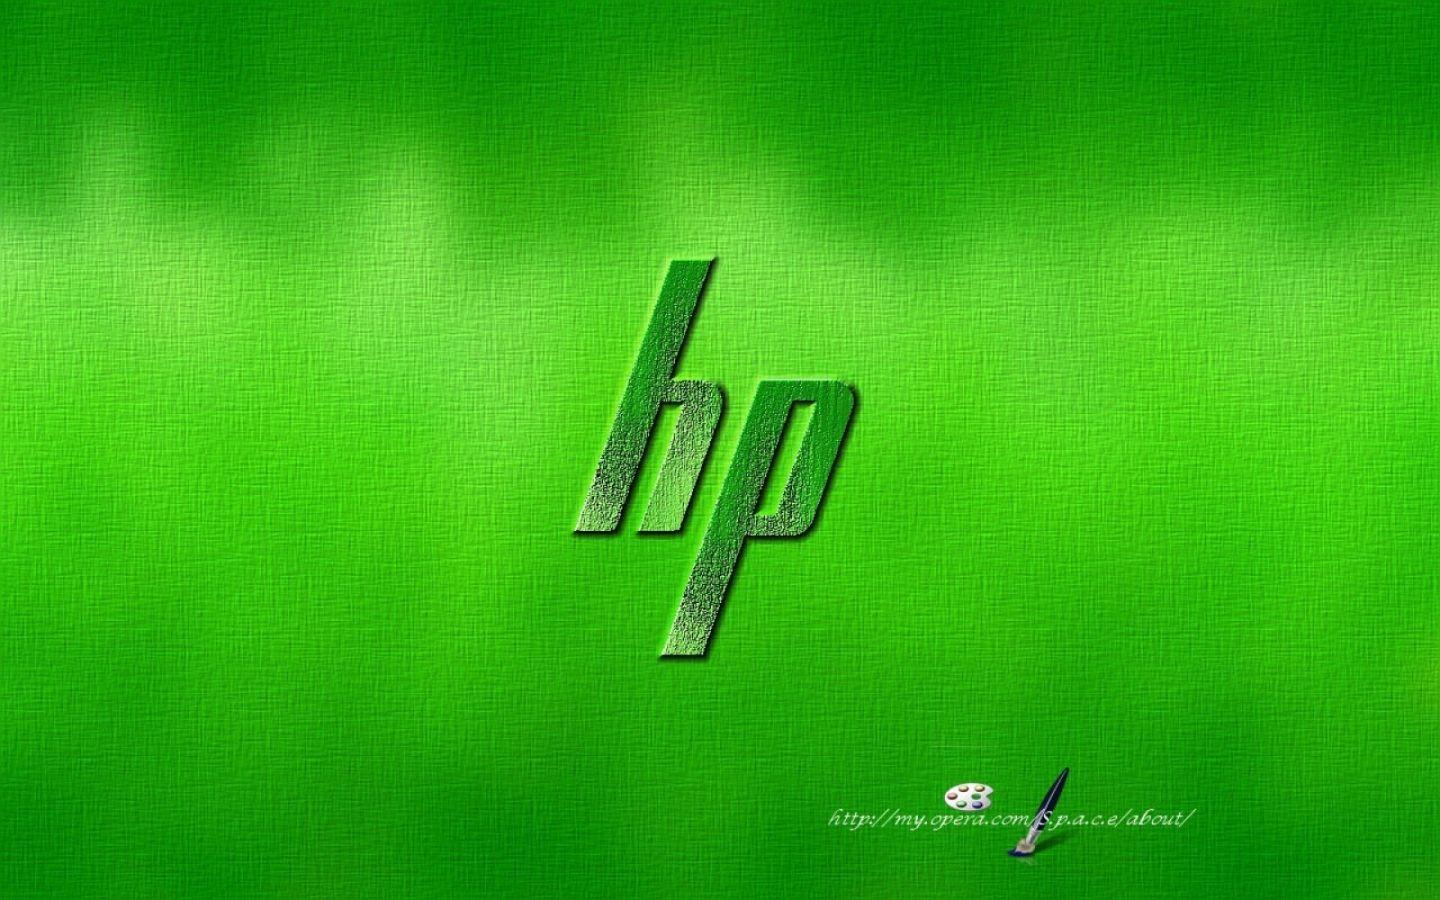 Những hình nền laptop HP đẹp sẽ giúp chiếc laptop của bạn trở nên bắt mắt và nổi bật hơn. Hãy khám phá ngay bộ sưu tập hình nền đẹp của chúng tôi và tìm kiếm đúng hình nền để trang trí cho thiết bị của bạn.